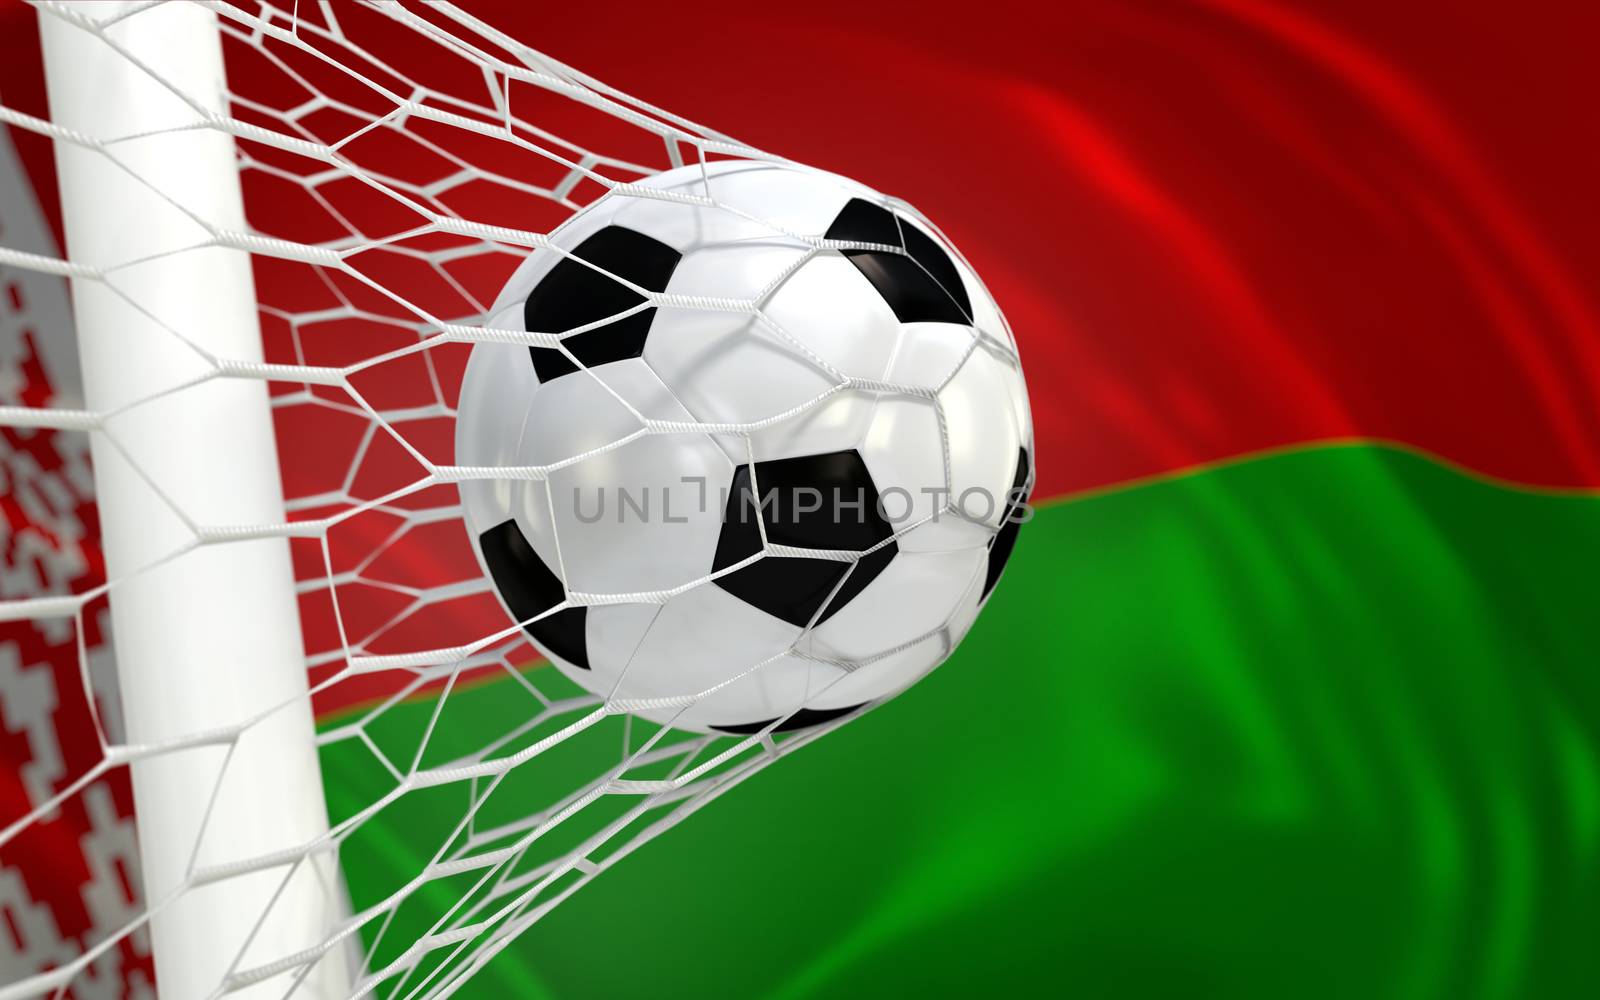 Belarus flag and soccer ball, football in goal net